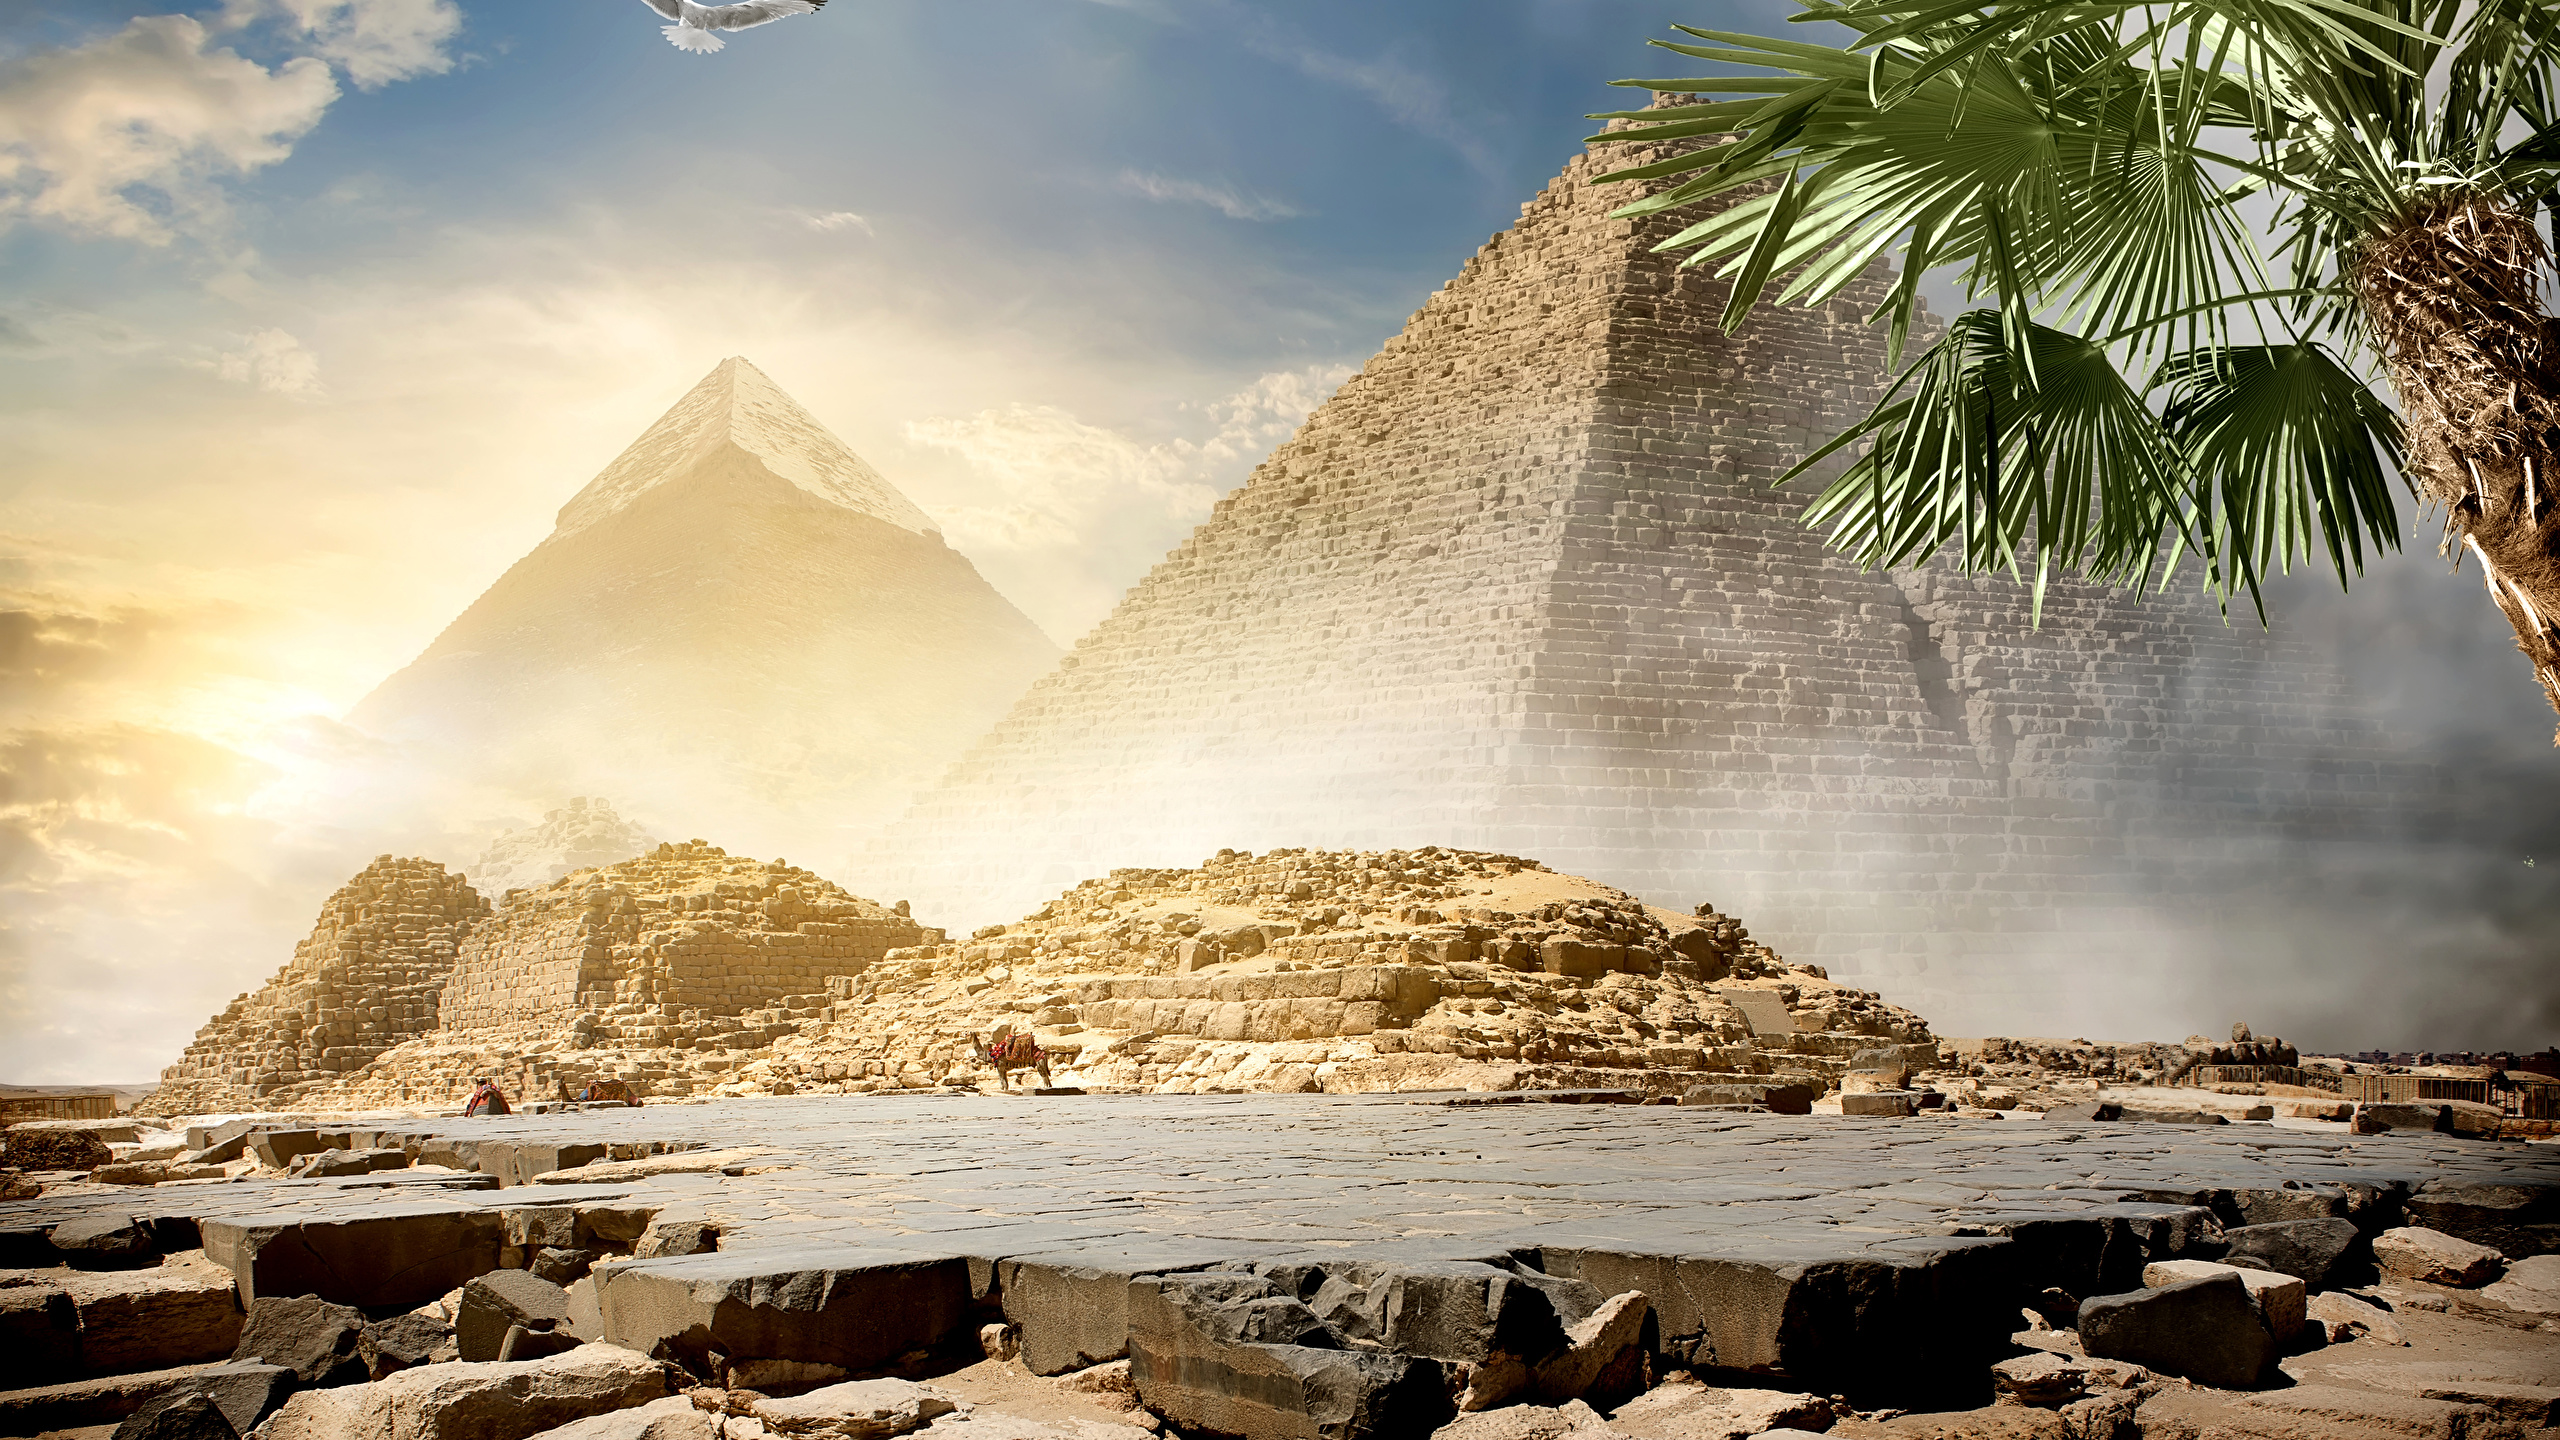 壁紙 2560x1440 エジプト 砂漠 石 空 Cairo ピラミッド 自然 ダウンロード 写真